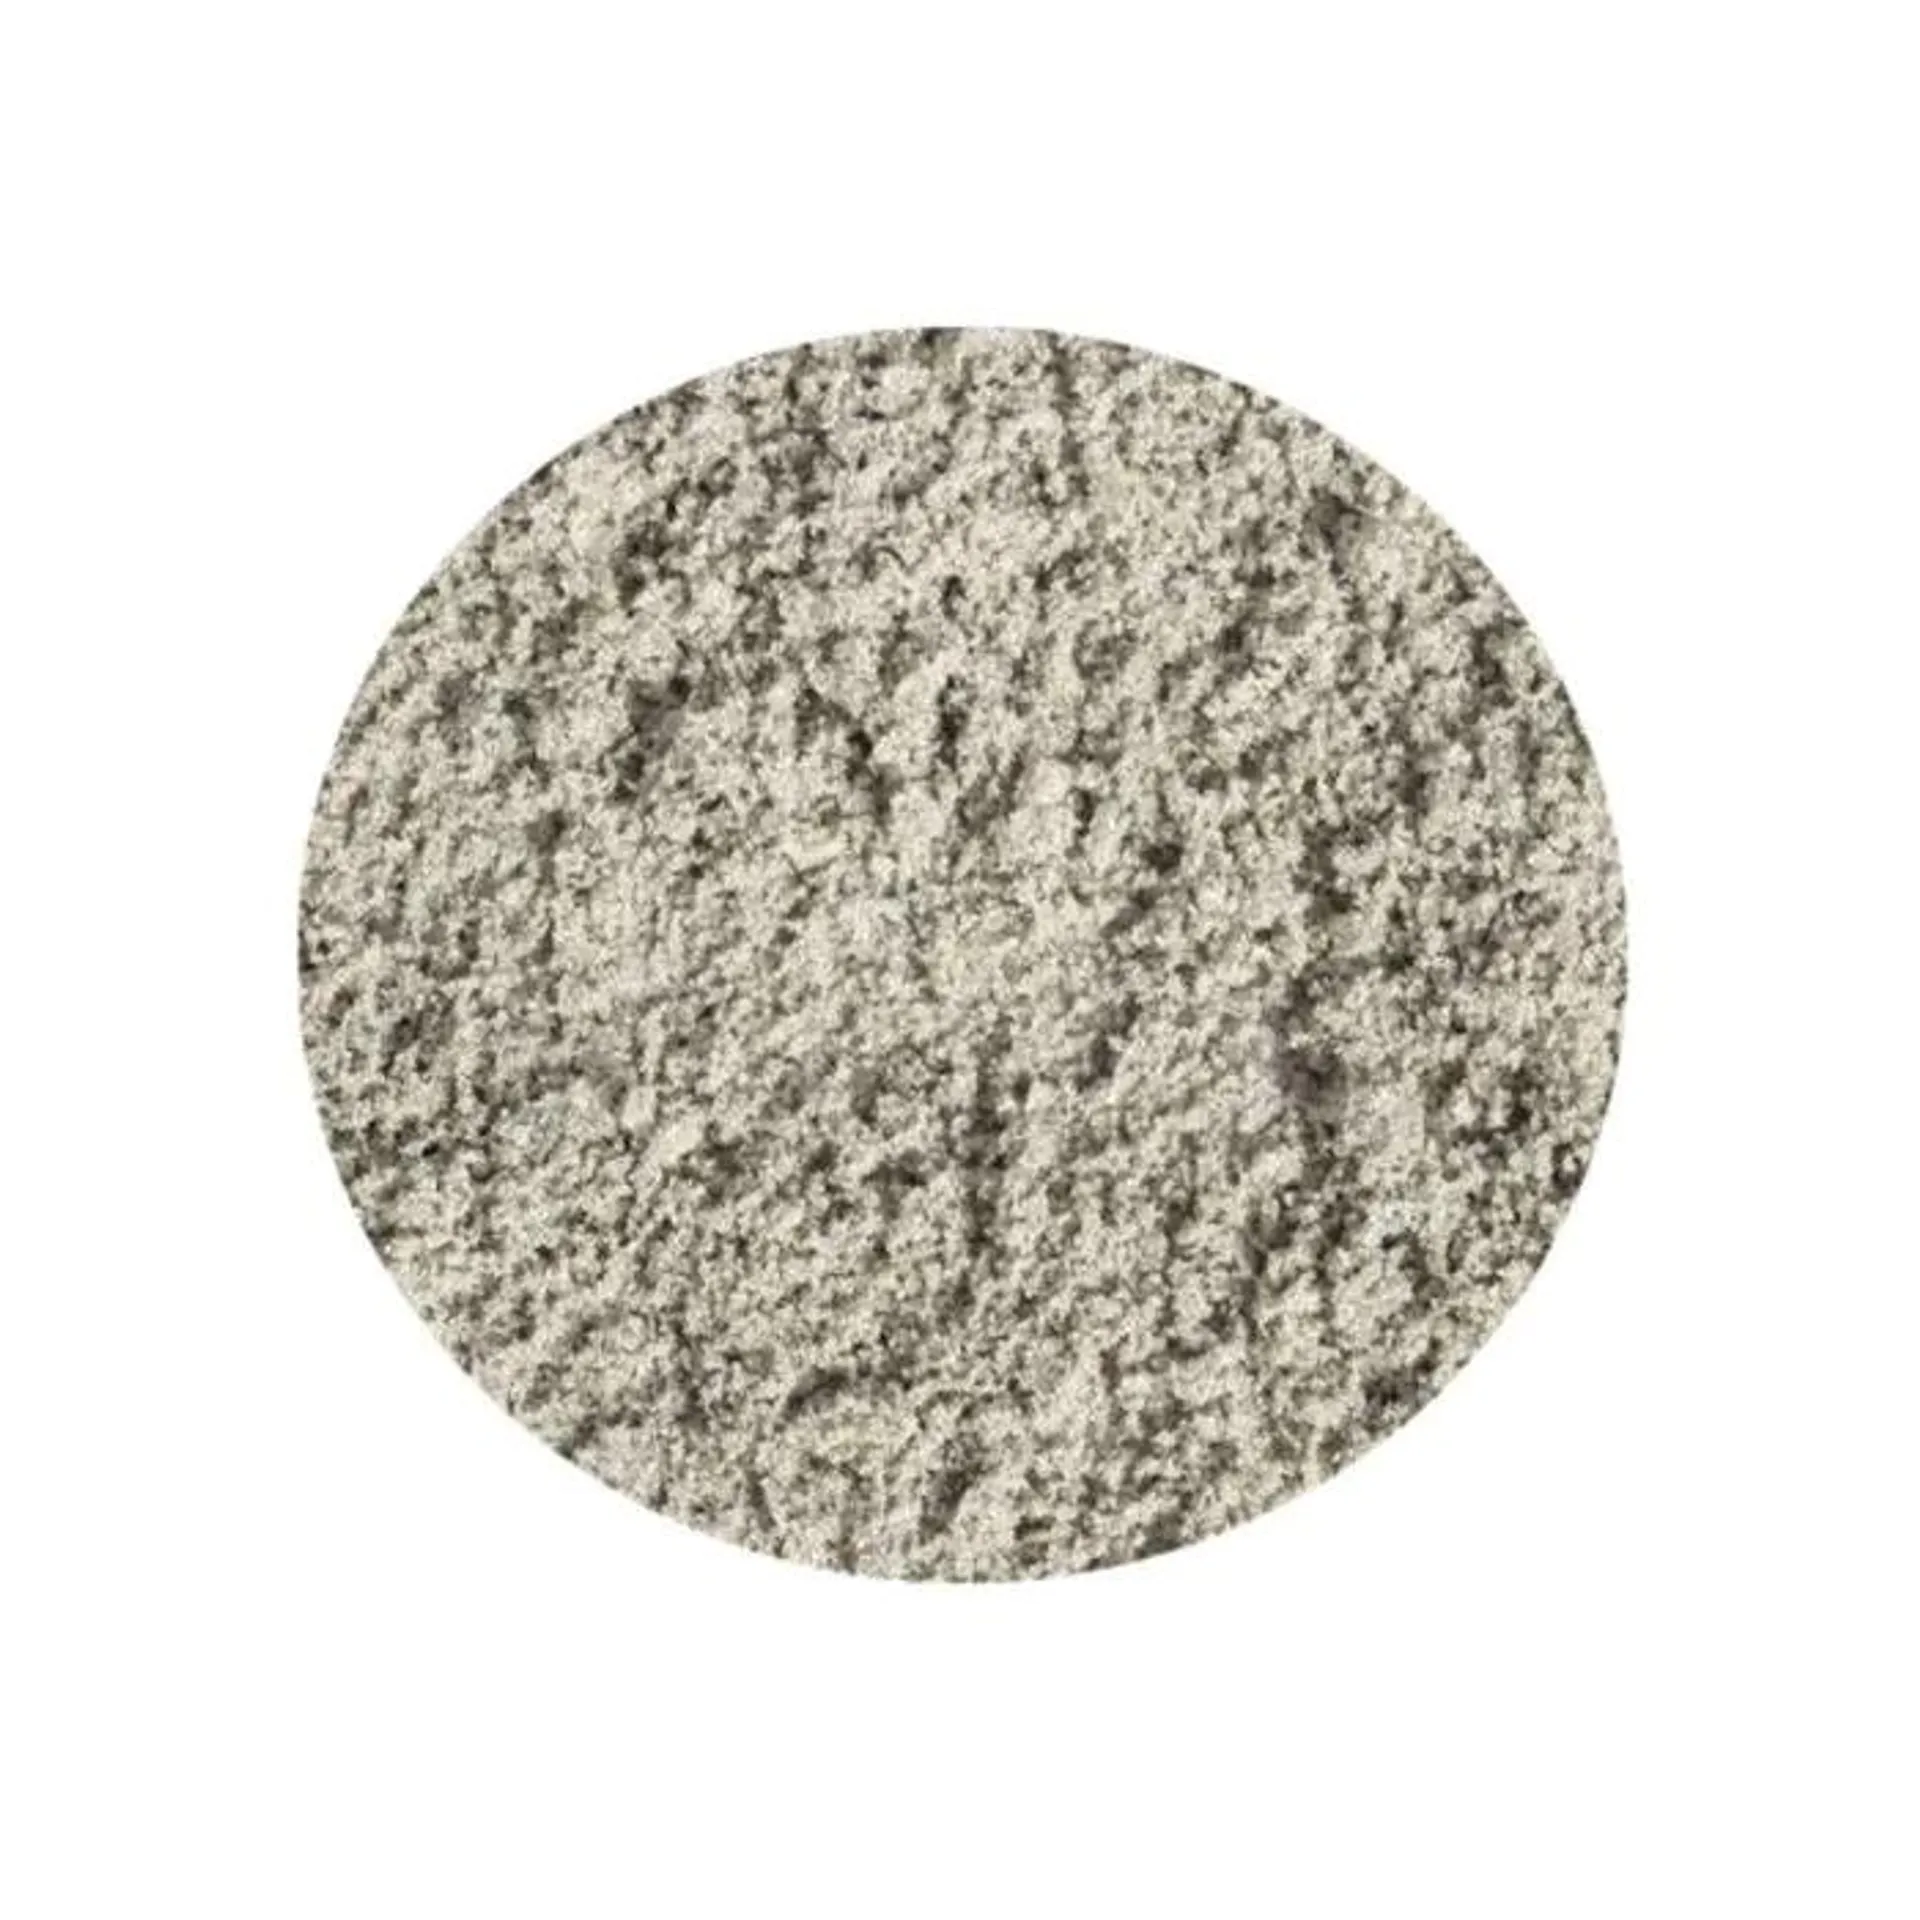 White Sand 25kg (Granite Sand)